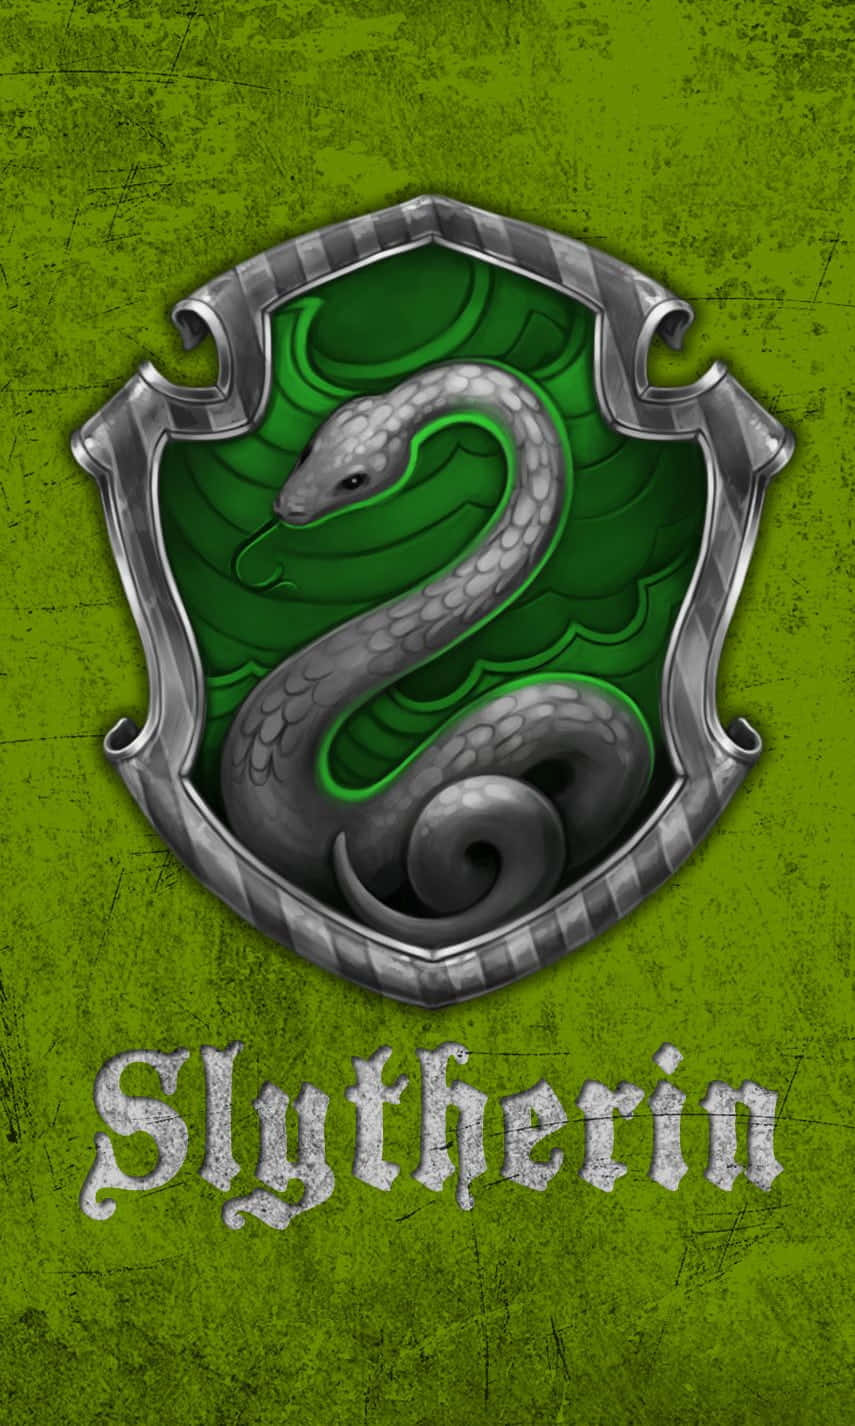 Umailustração Da Famosa Casa De Harry Potter, Slytherin.